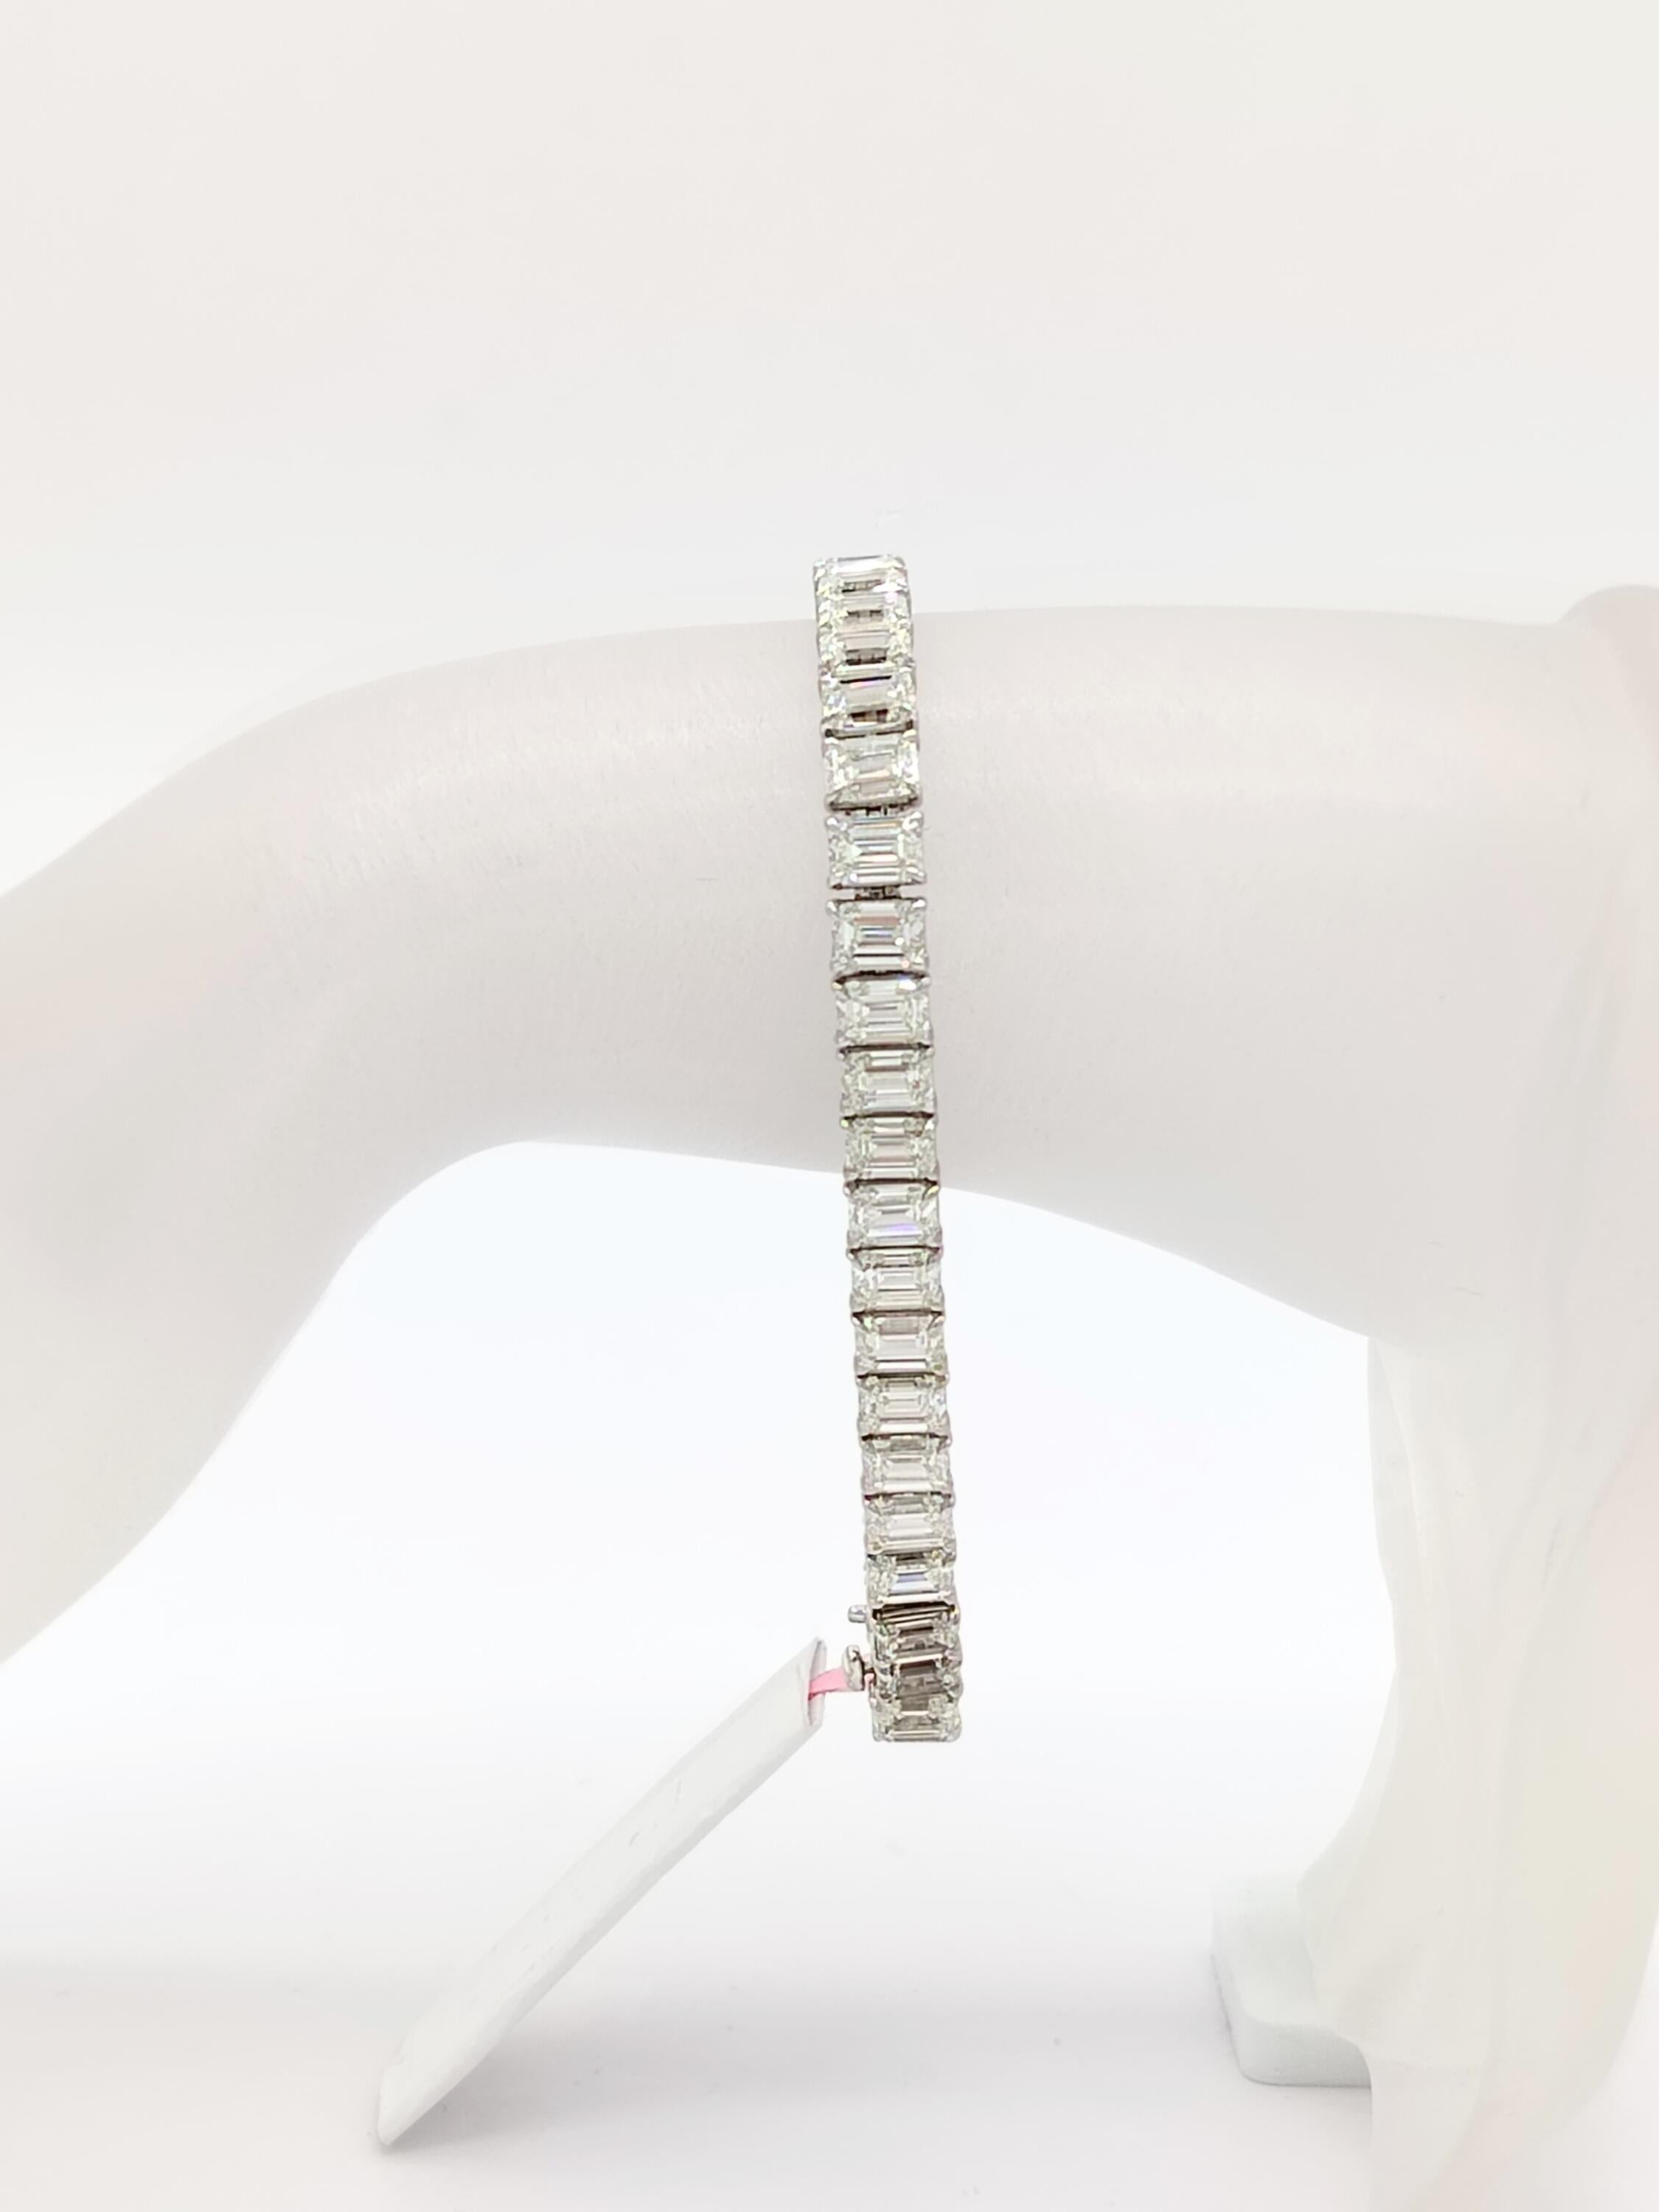 Magnifique 18,45 ct. Bracelet de tennis HIJ IF VS2 diamant blanc taille émeraude.  Total de 46 pierres.  Fabriqué à la main en or blanc 18 carats.  La longueur est de 7